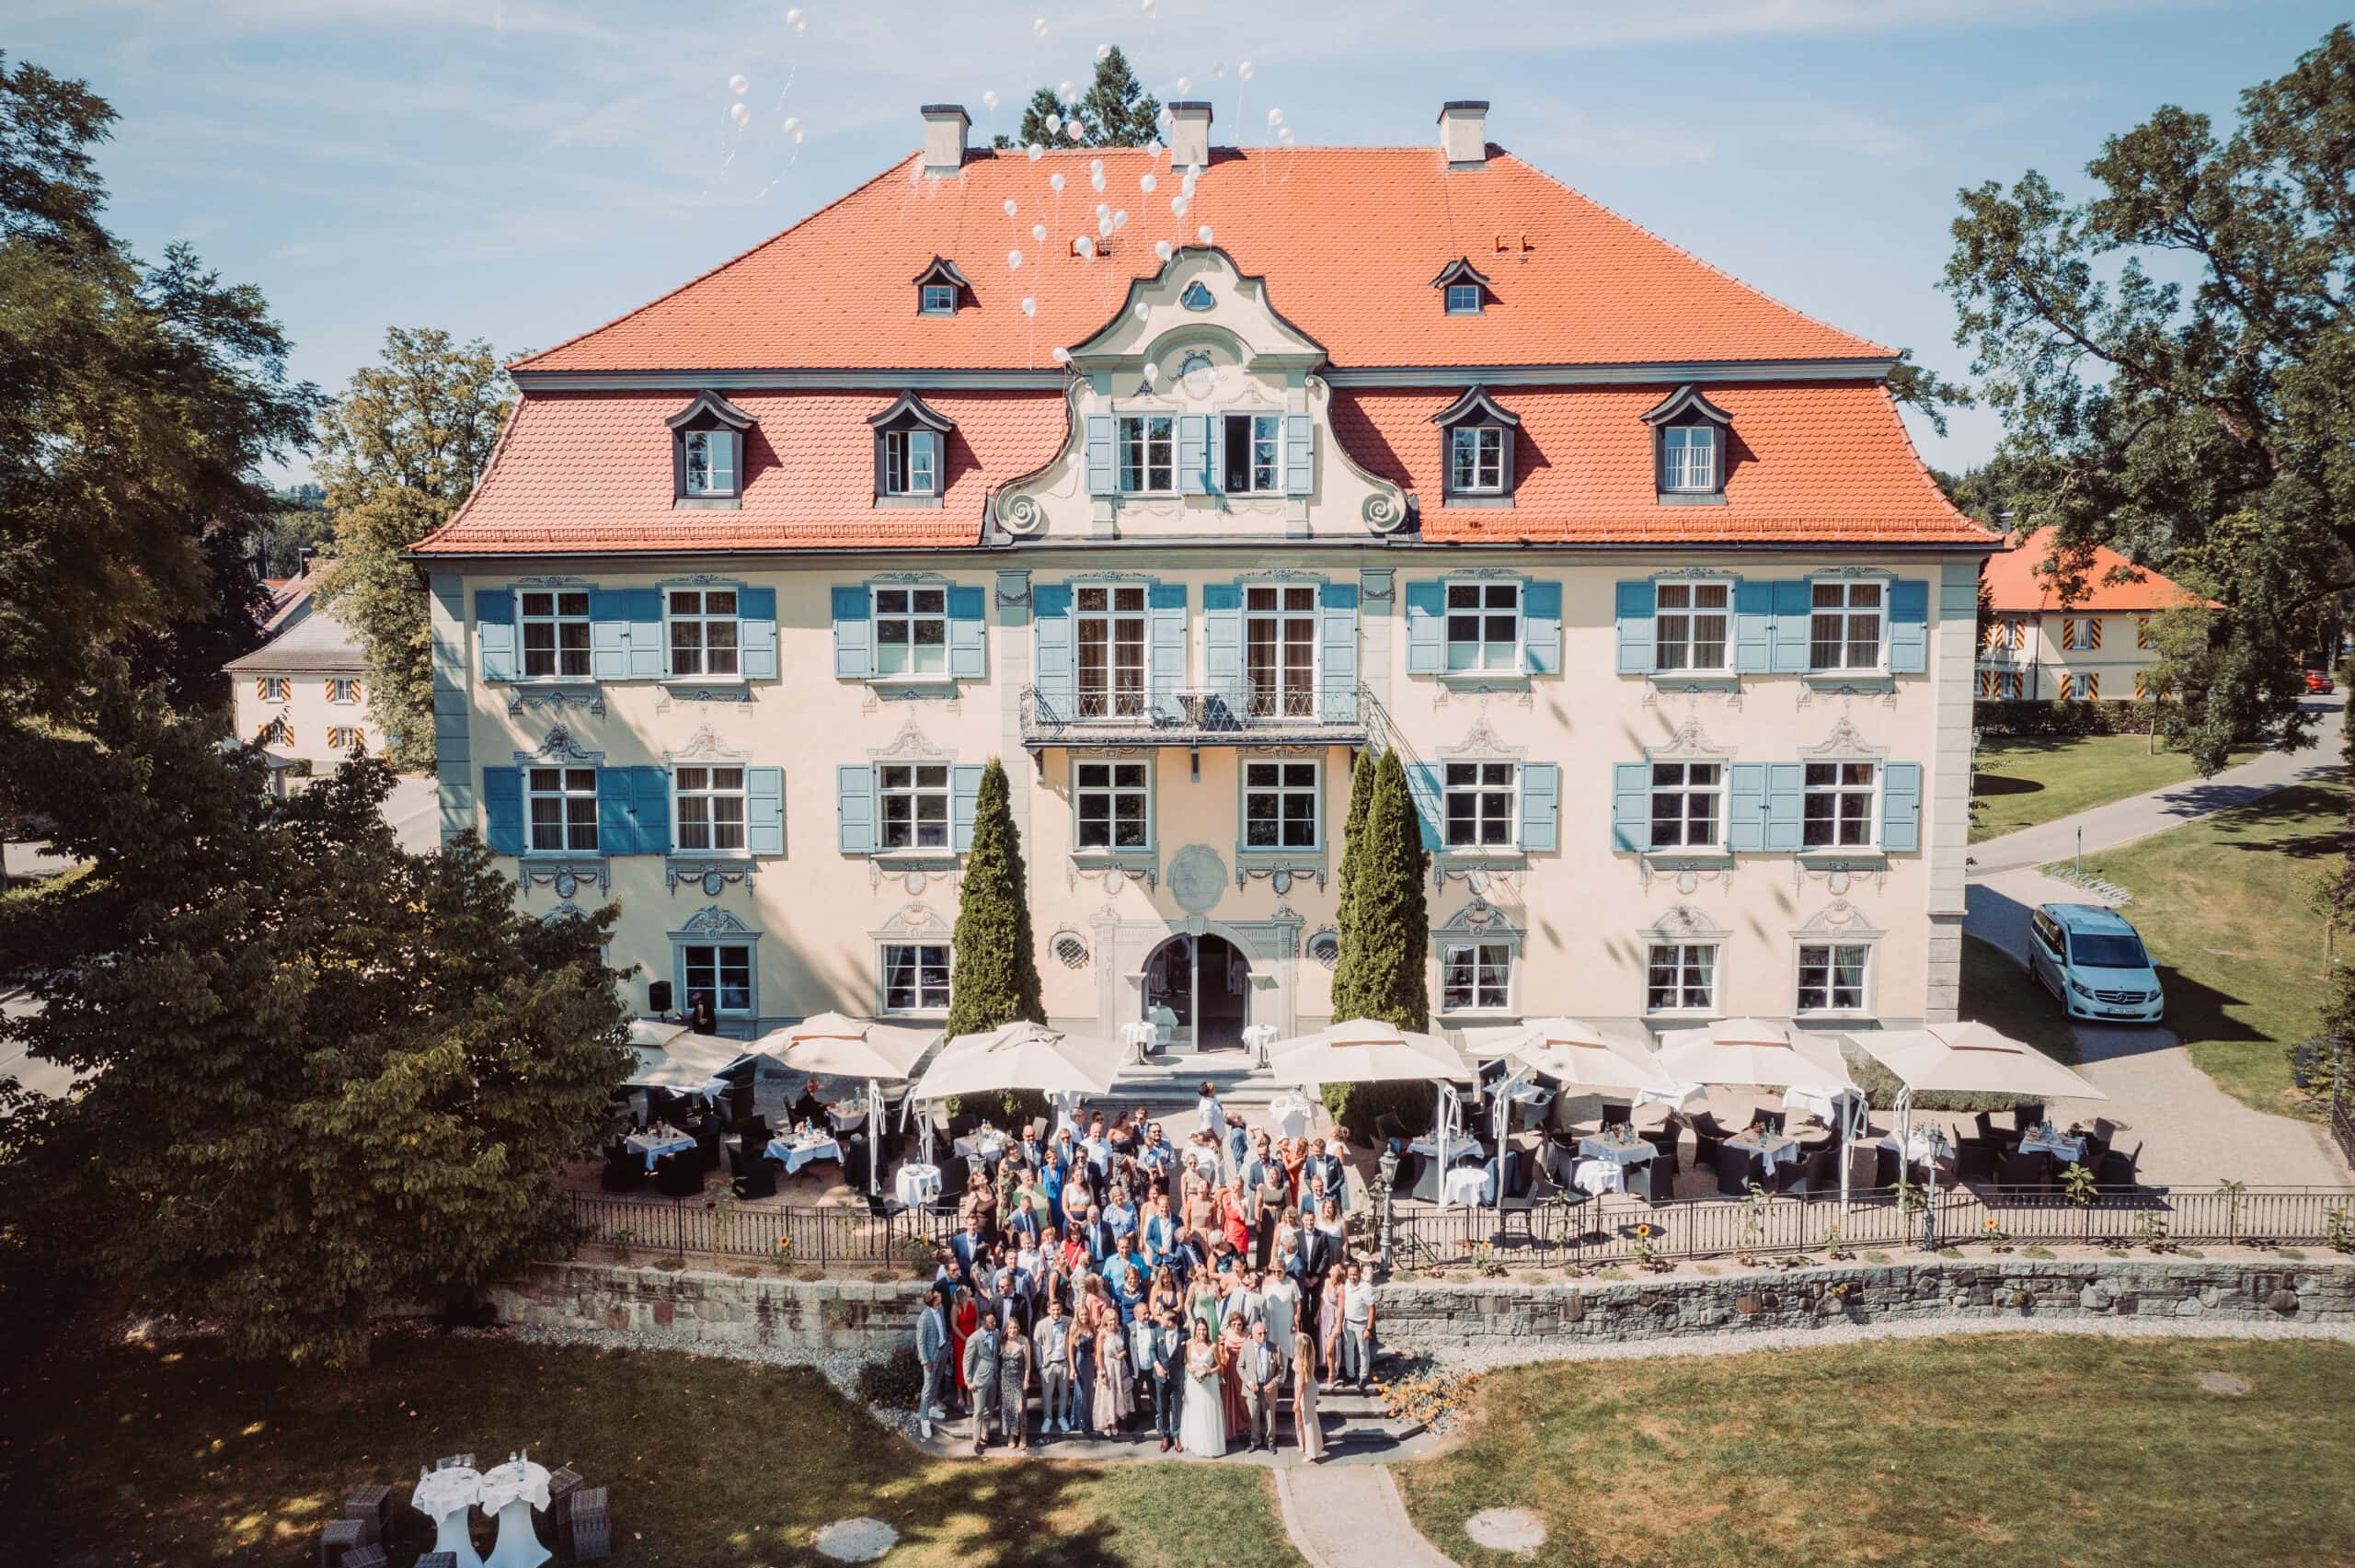 Das Gruppenshooting in Isny im Allgäu auf Schloss Neutrauchburg. Ein Gruppenbild von der Hochzeitsgesellschaft mit Luftballonen vor dem Schloss Neutrauchburg.